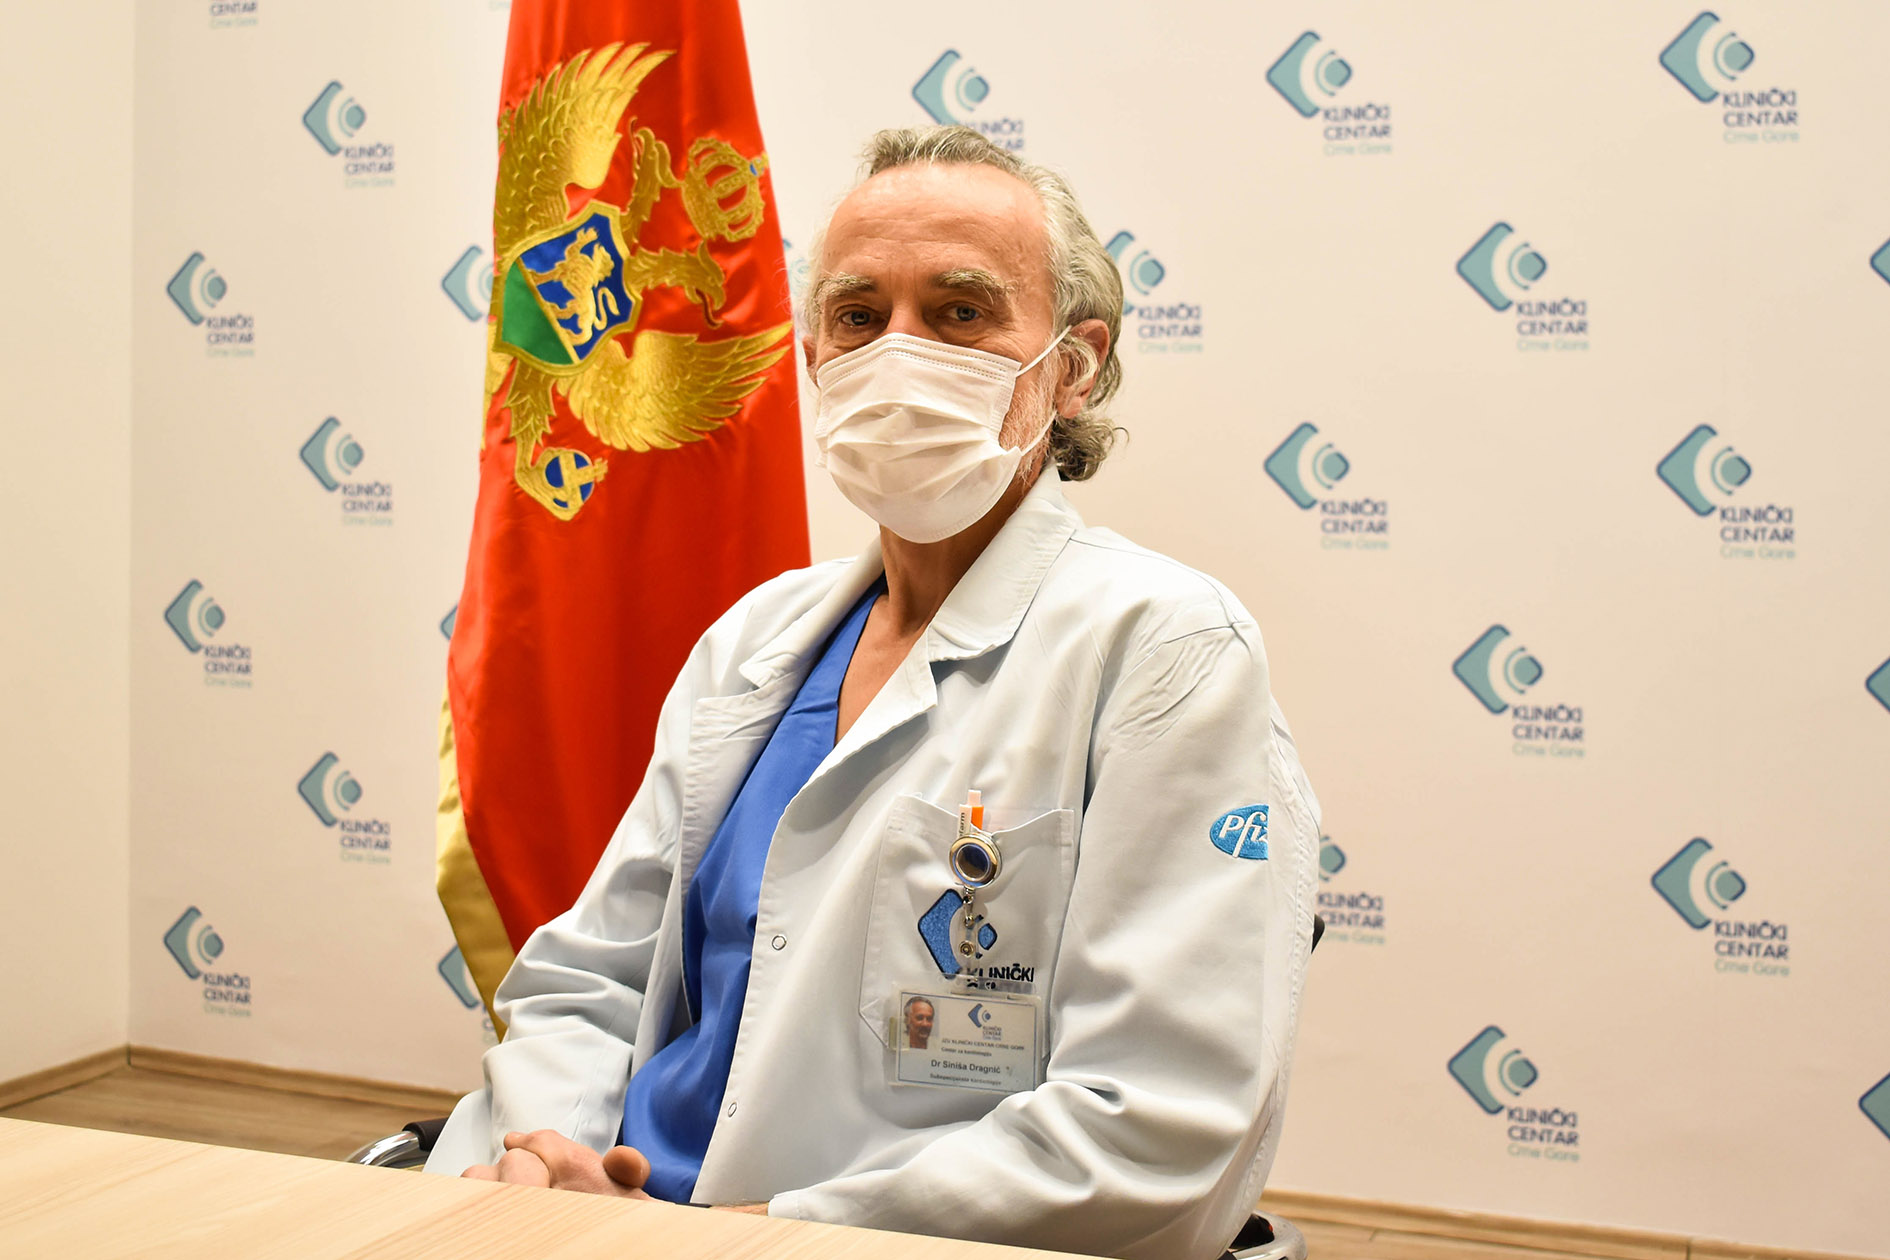 Dr Siniša Dragnić